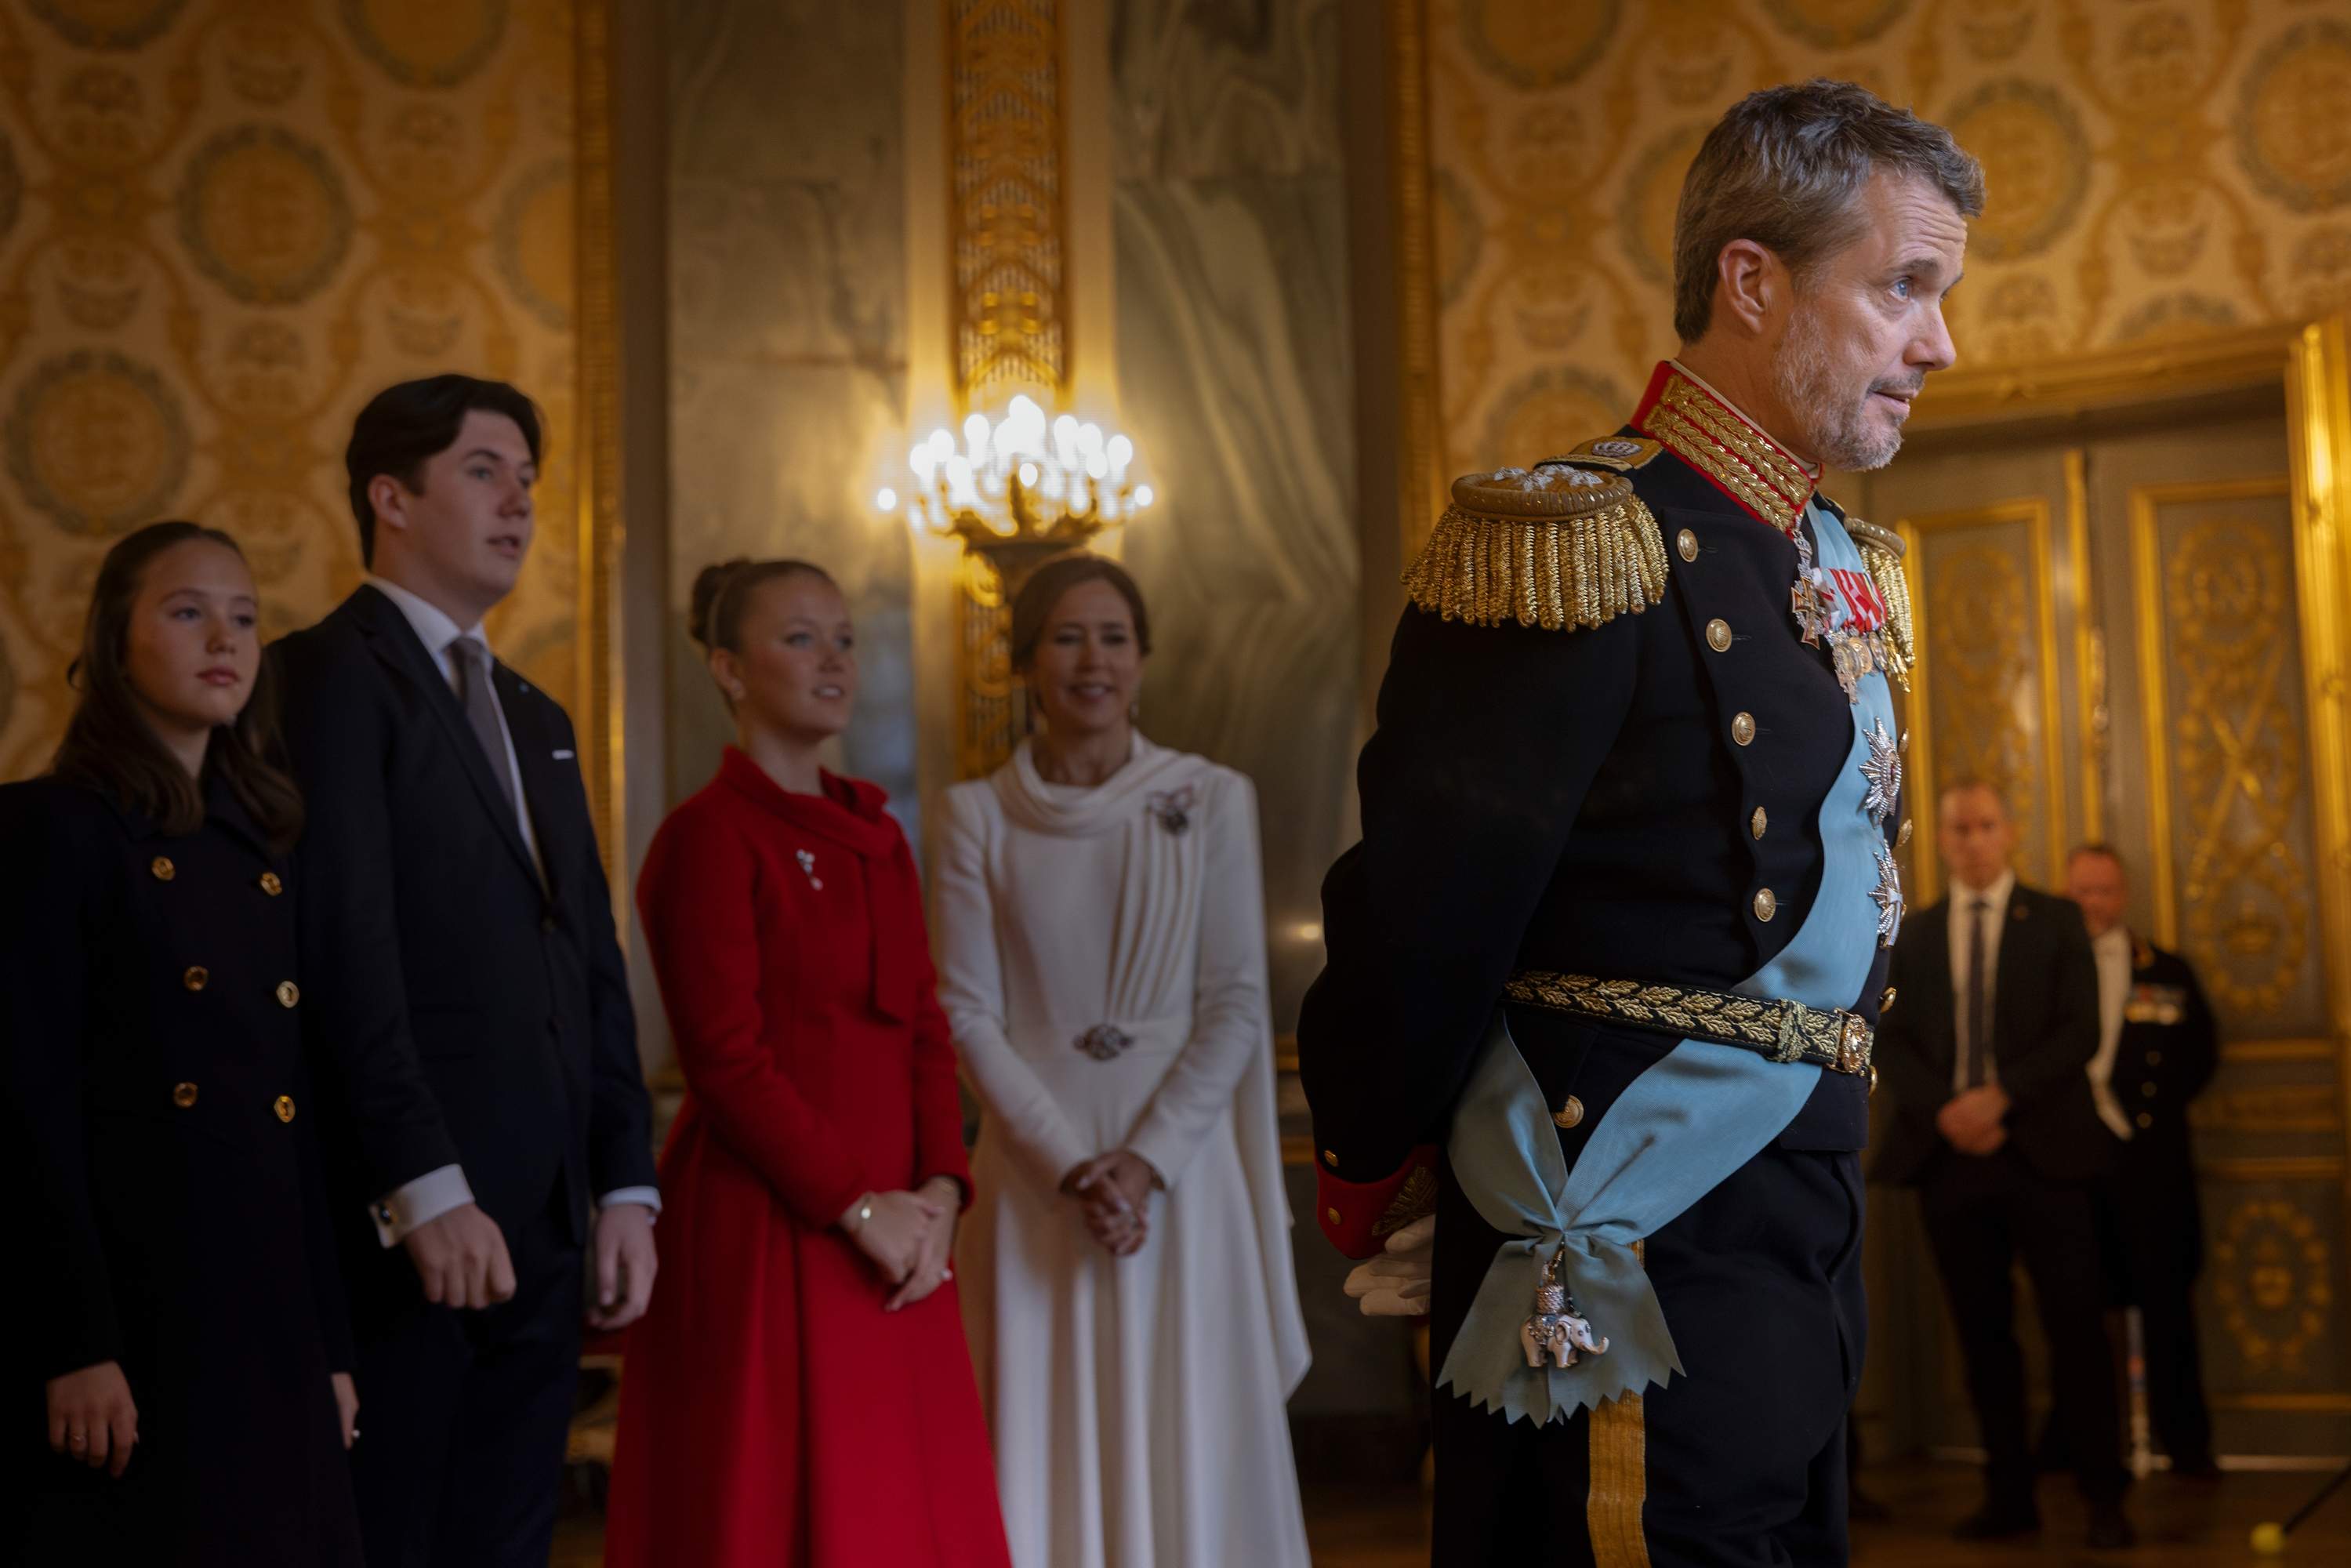 Federico X de Dinamarca amenaza a la prensa para tapar las ilegalidades de su hijo